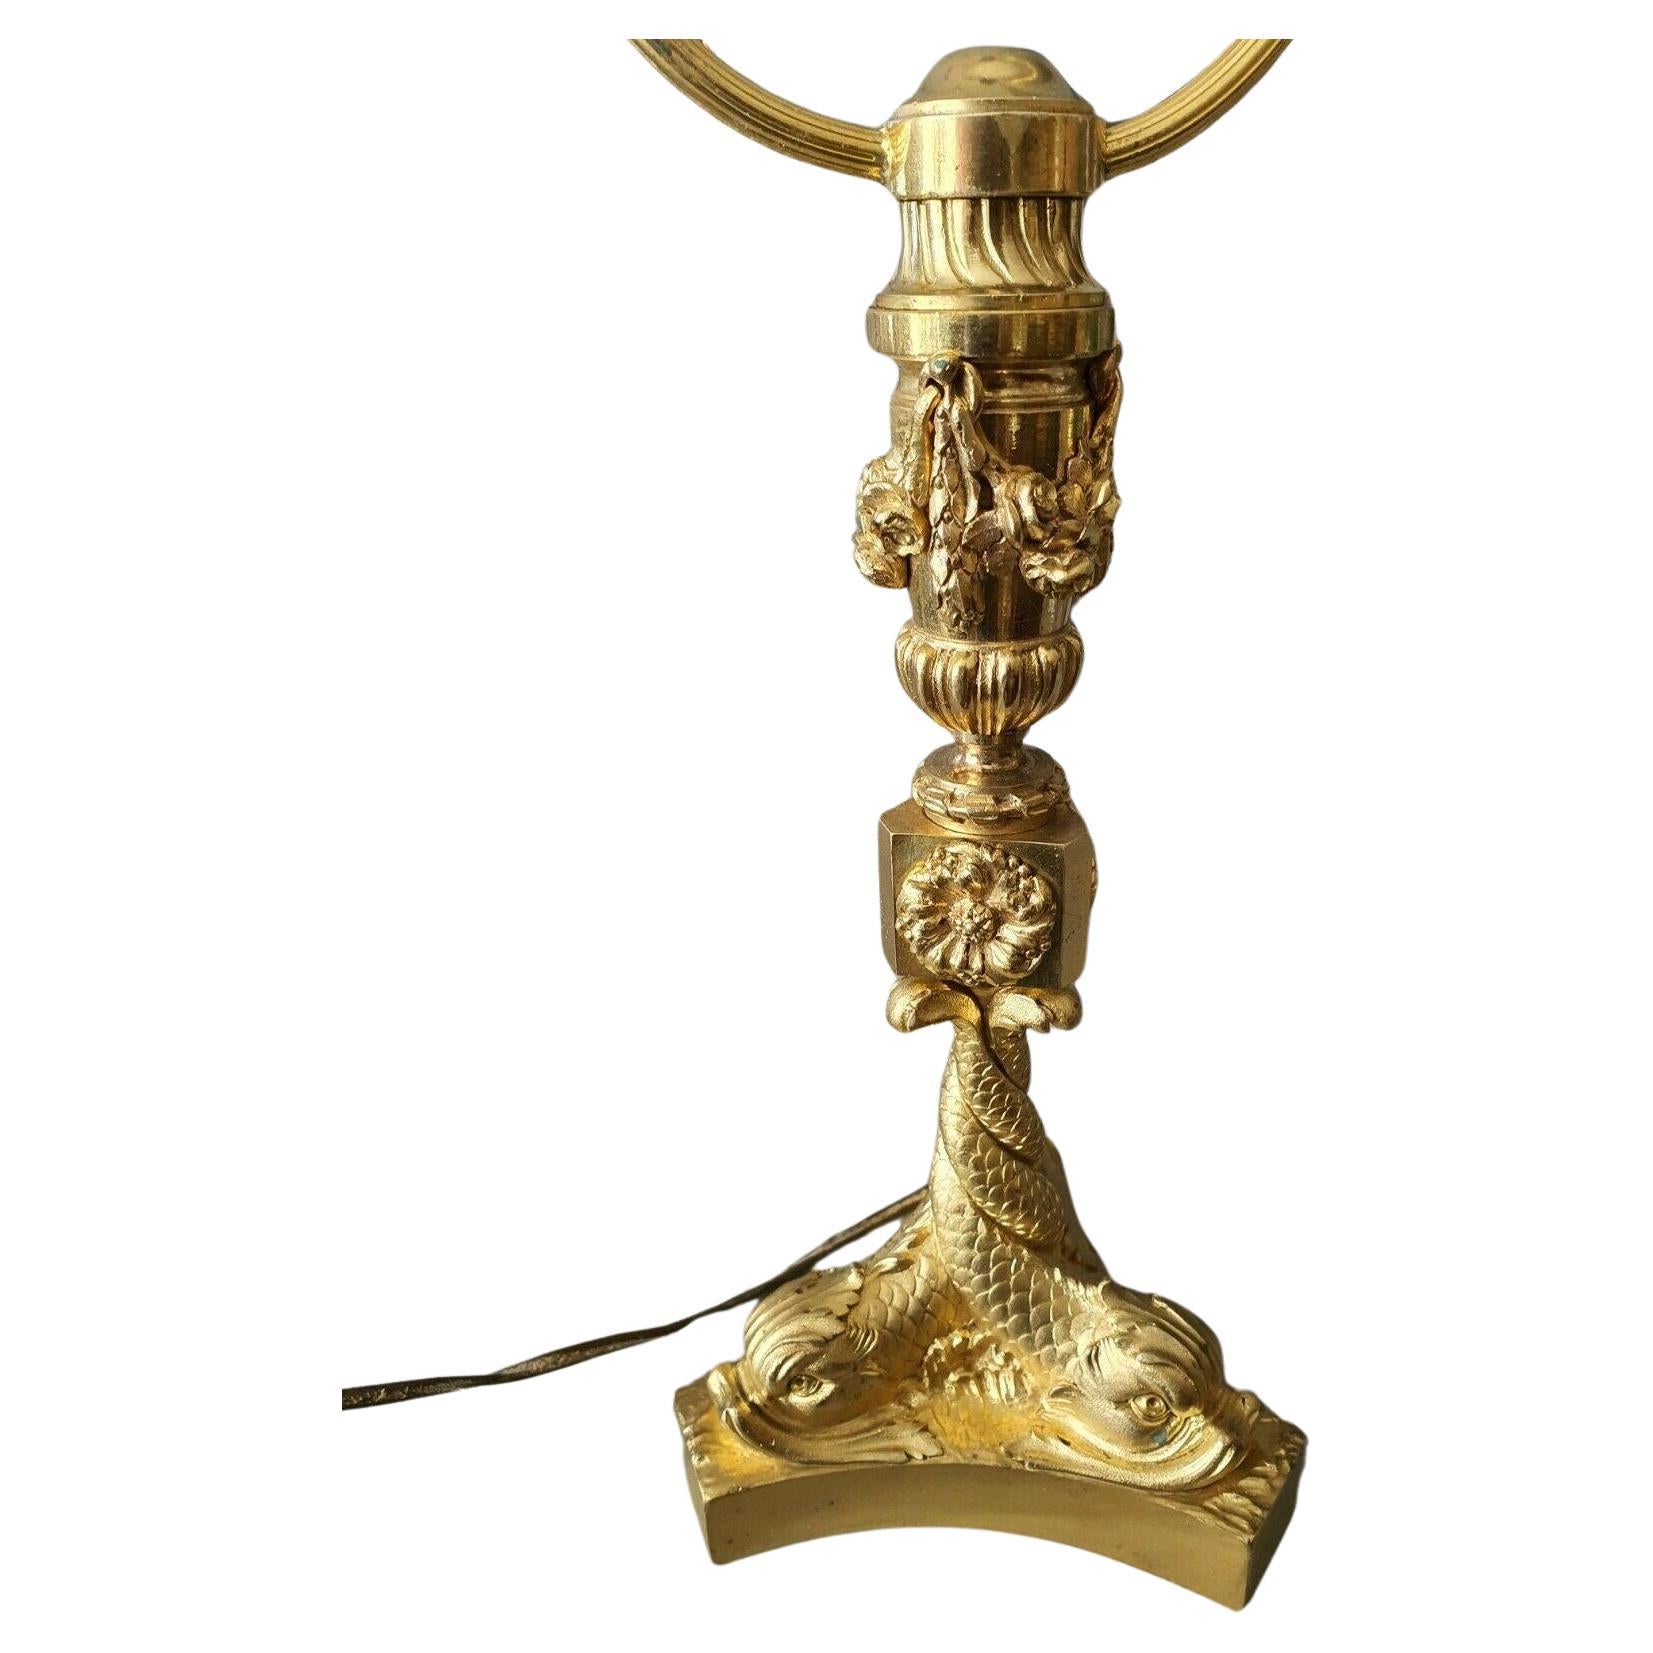 Lampe de table en bronze doré, style Louis XV, 19e siècle, avec dauphins/ créatures marines/ poissons entrelacés. Cette lampe présente de nombreux détails et est magnifiquement mise en valeur.